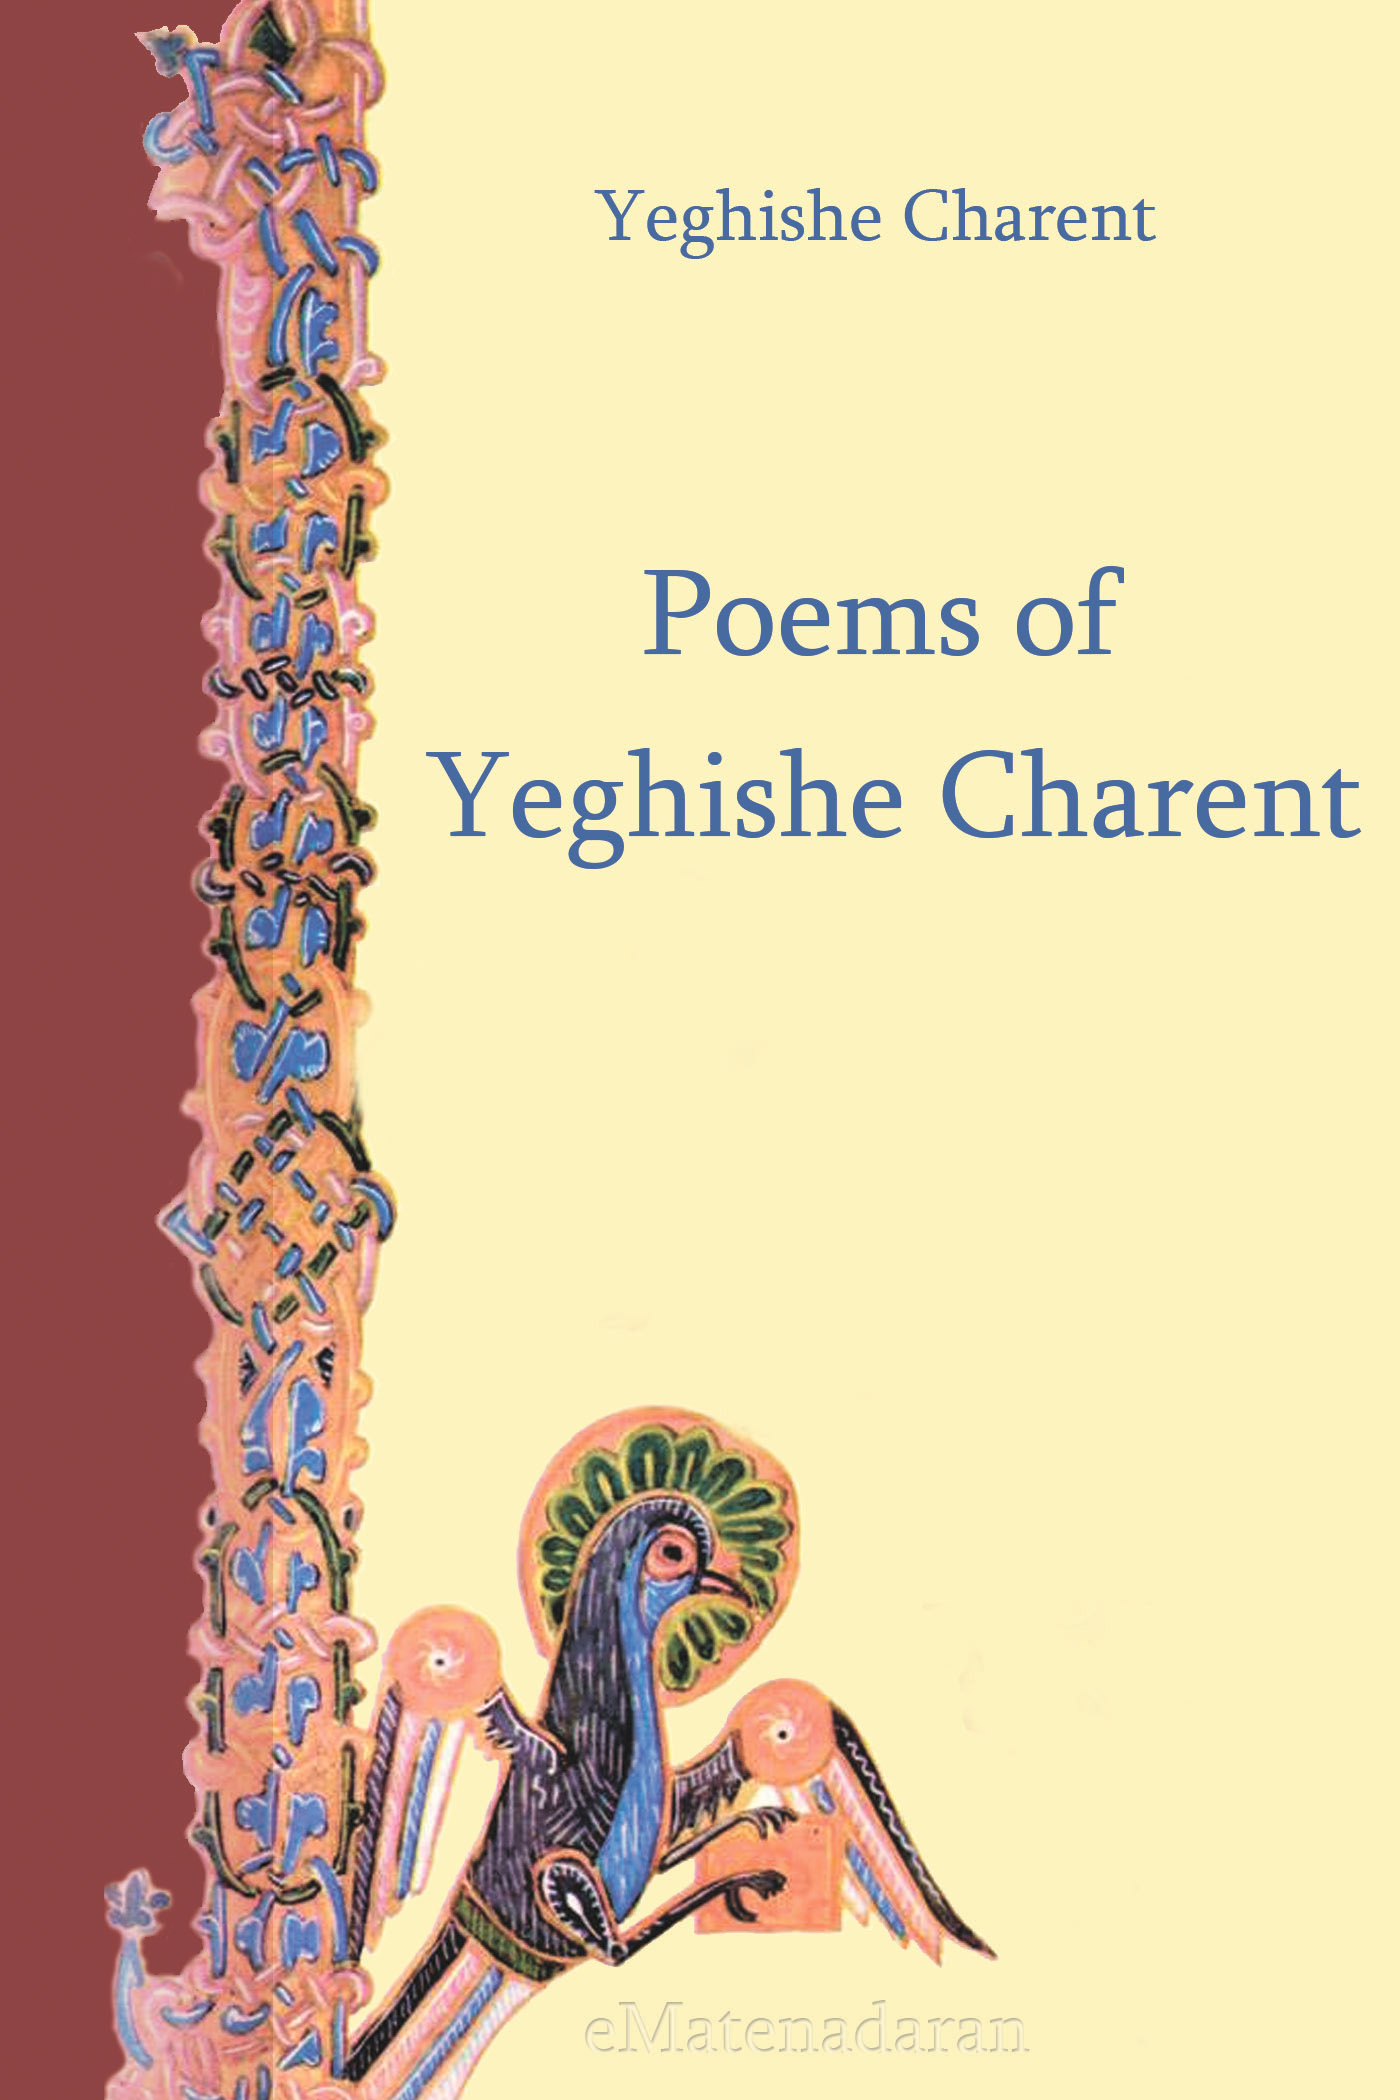 Книга Poems of Yeghishe Charent из серии , созданная Charents Yeghishe, может относится к жанру Иностранные языки, Поэзия, Зарубежные стихи. Стоимость электронной книги Poems of Yeghishe Charent с идентификатором 24429830 составляет 0.90 руб.